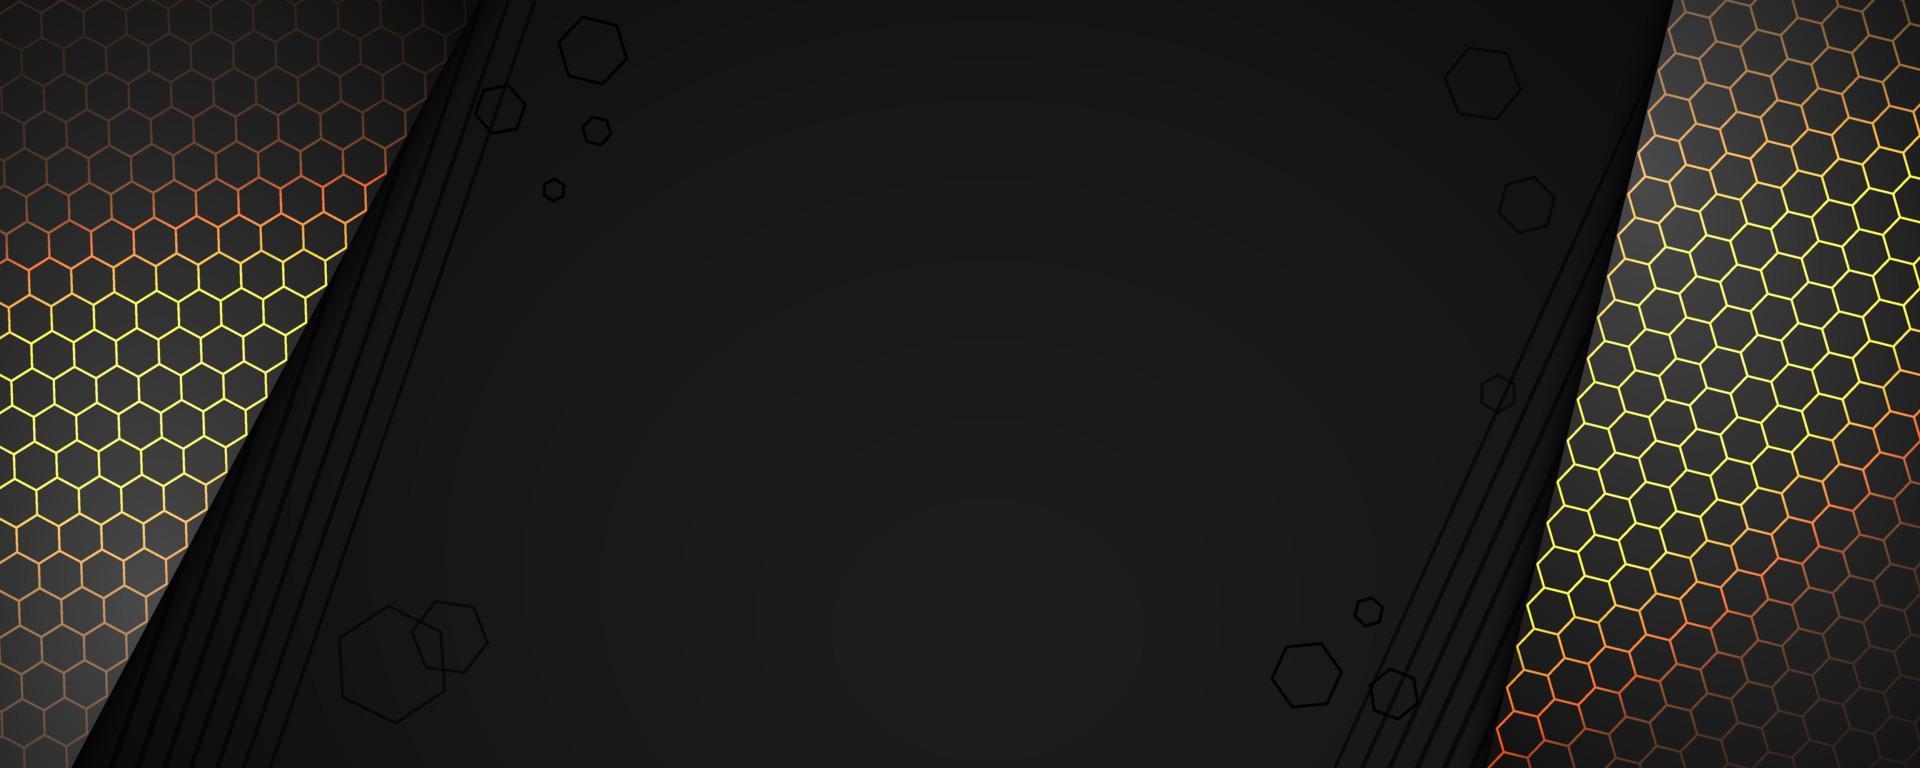 abstrakt mörk baner. skinande svart bakgrund med lysande sexhörning former mönster. vektor geometrisk bakgrund